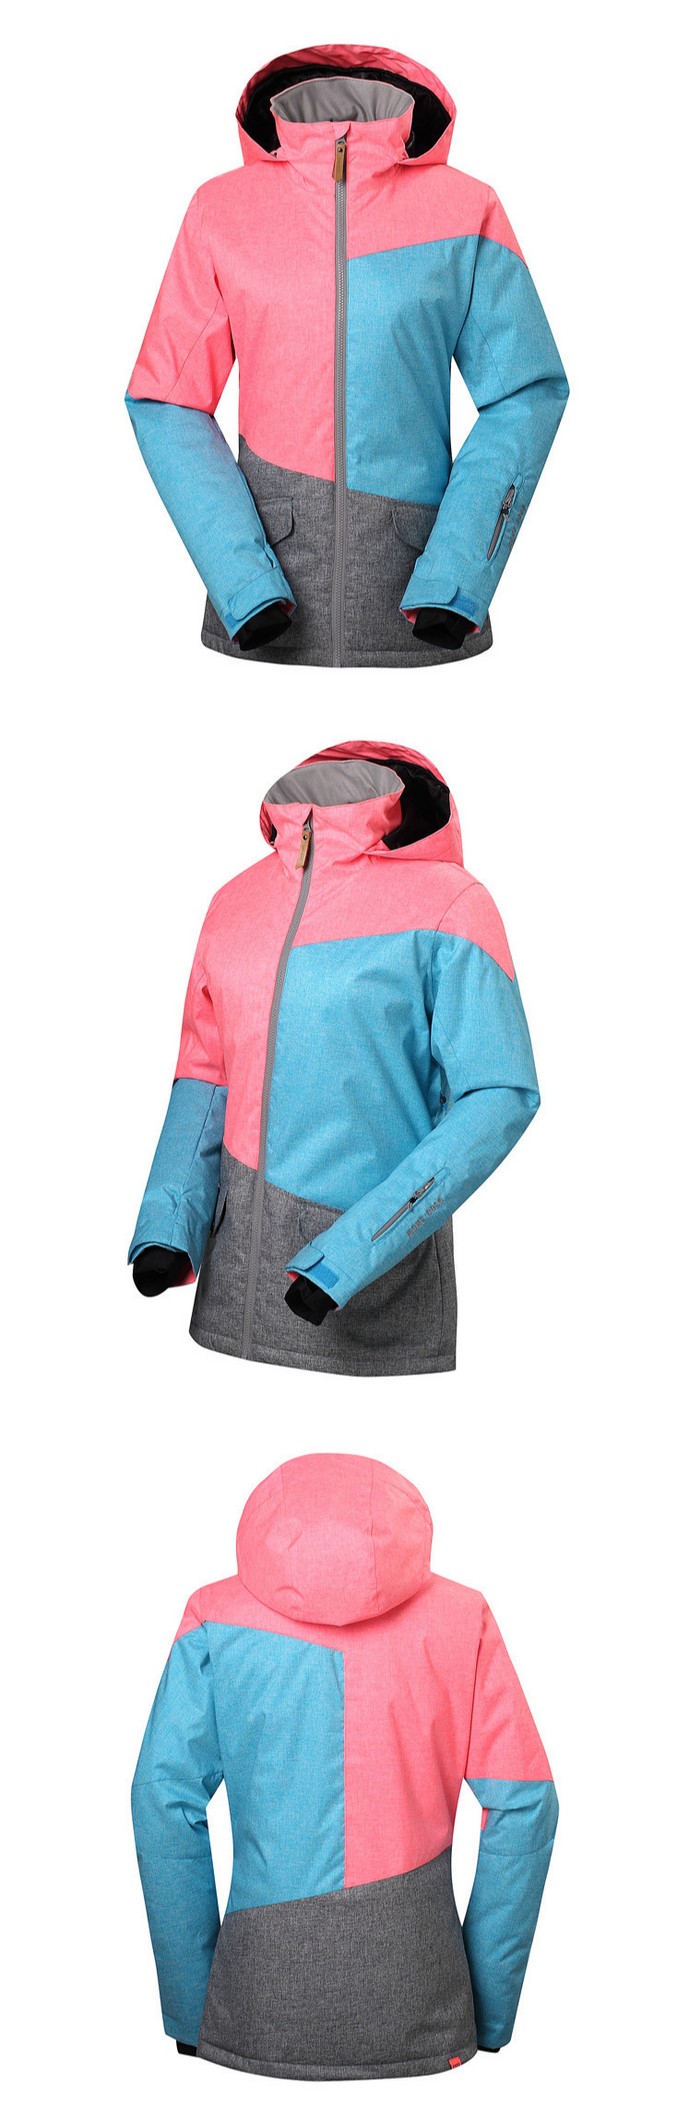 Женская зимняя лыжная куртка Gsou SNOW, женская куртка для сноуборда Gsou SNOW, лыжная экипировка, лыжная одежда